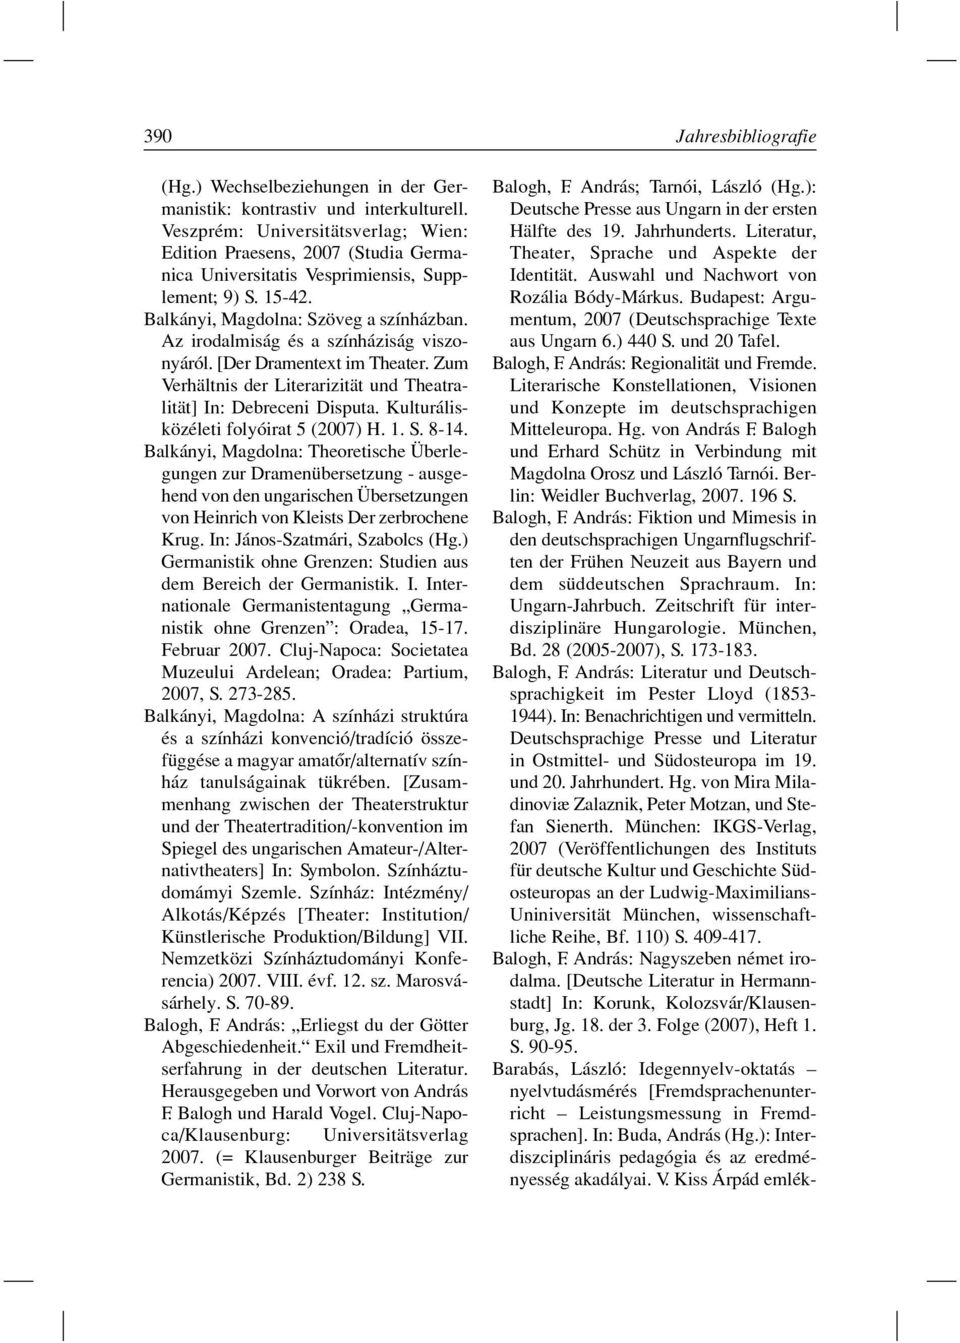 Az irodalmiság és a színháziság viszonyáról. [Der Dramentext im Theater. Zum Verhältnis der Literarizität und Theatralität] In: Debreceni Disputa. Kulturálisközéleti folyóirat 5 (2007) H. 1. S. 8-14.